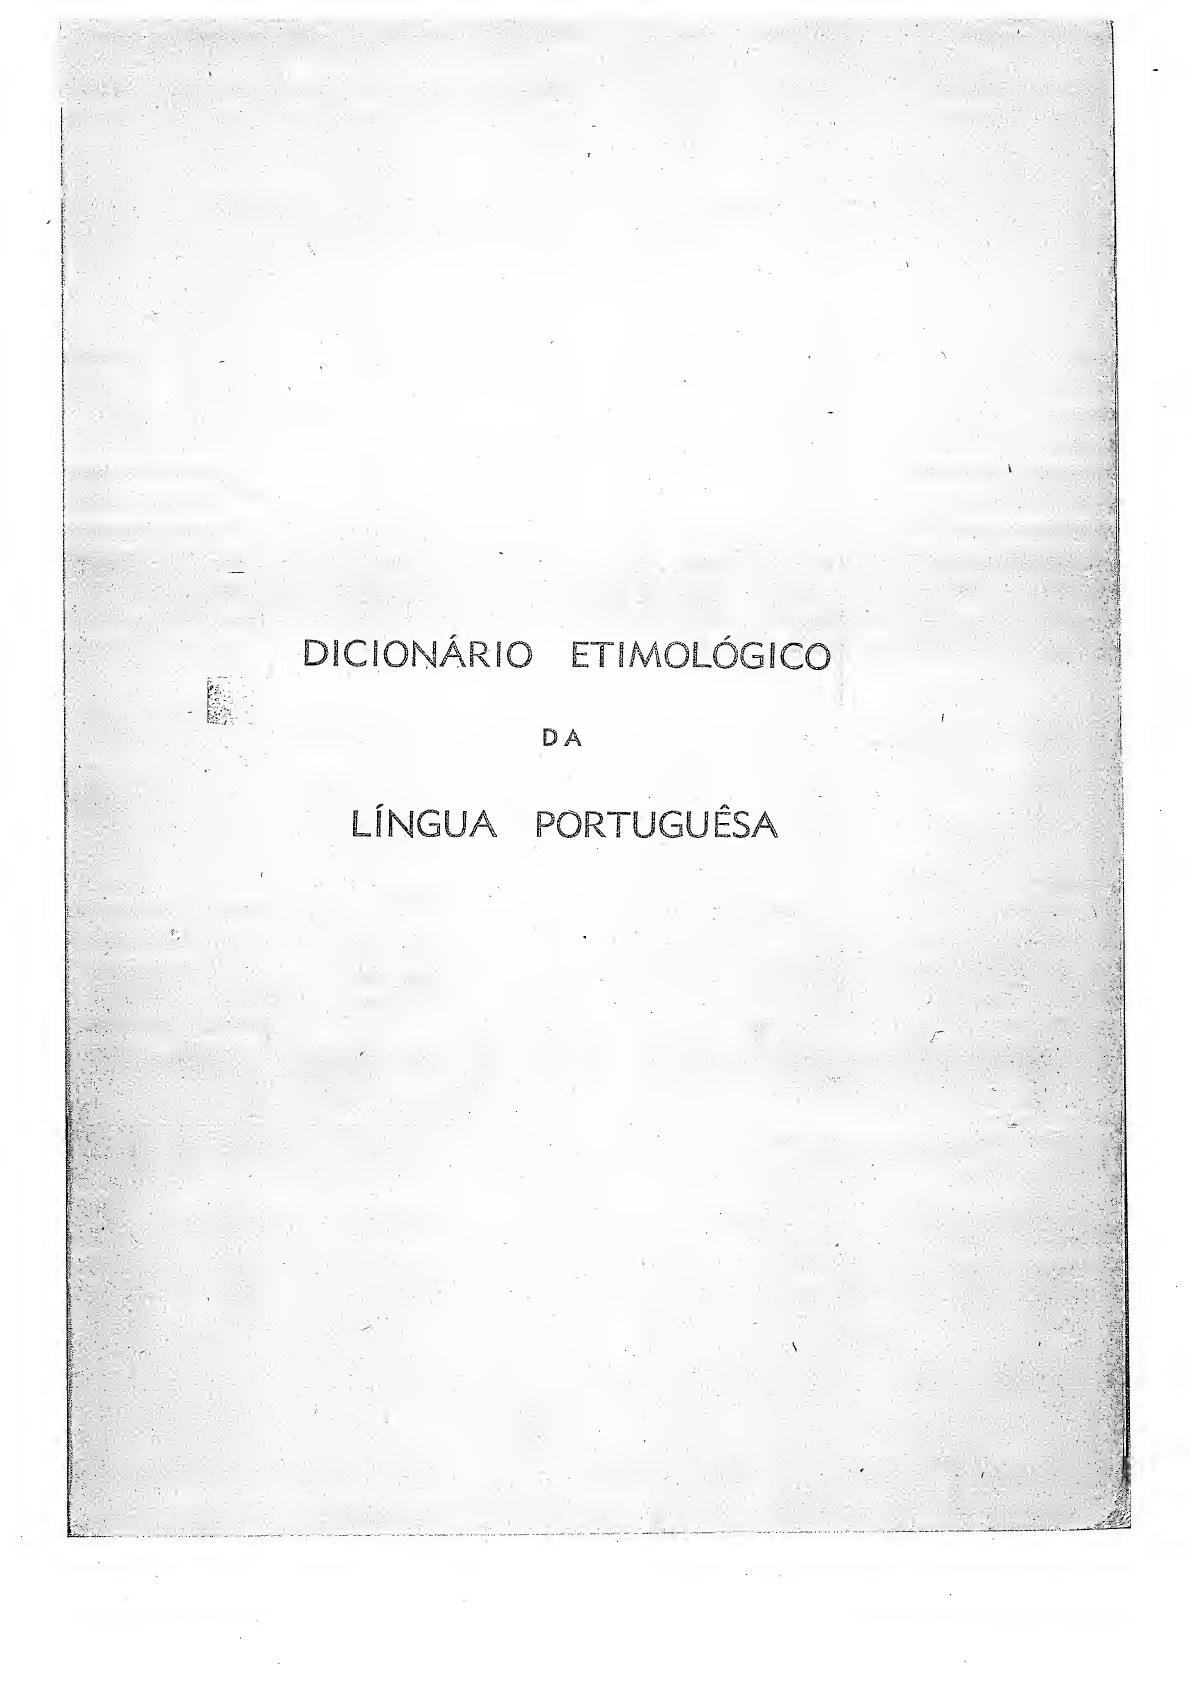 Guante - Dicio, Dicionário Online de Português